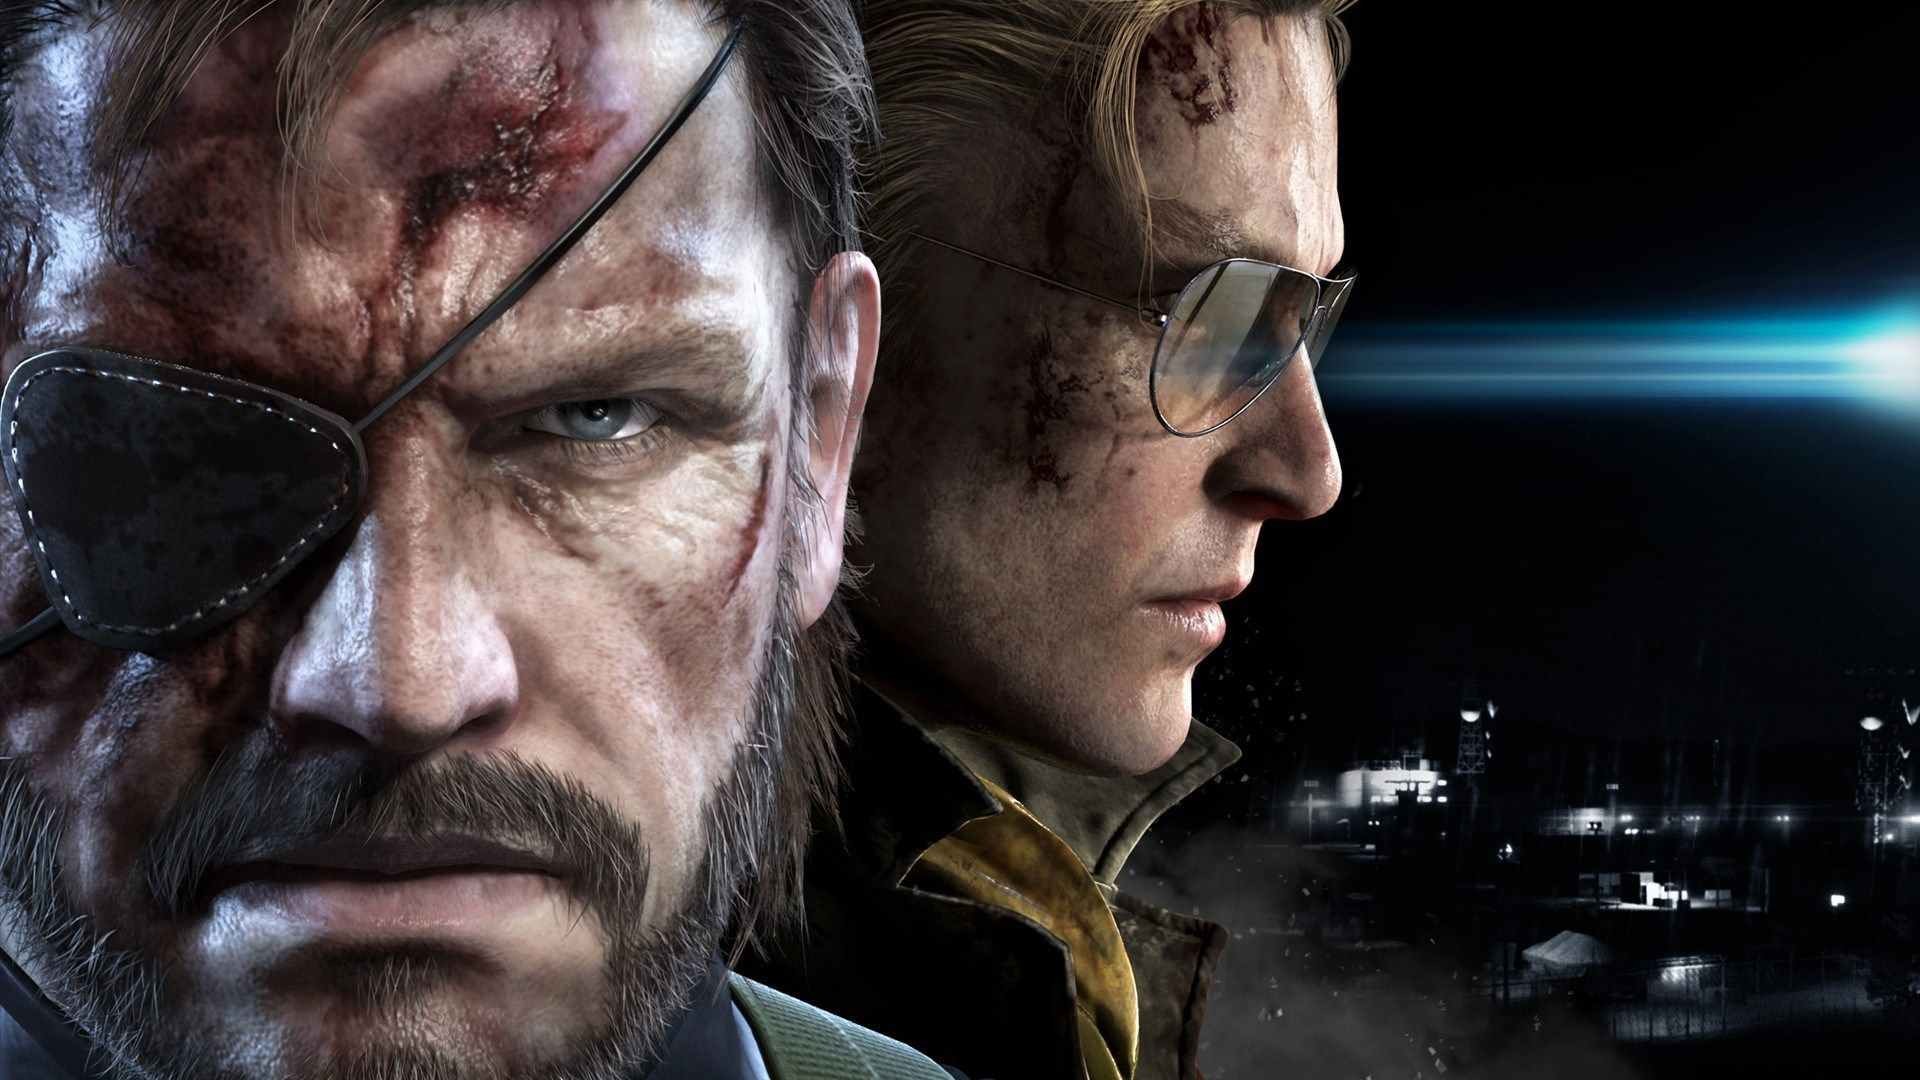 ÙØ¨ÙØ¹Ø§Øª Ø³ÙØ³ÙØ© Metal Gear Solid ØªØµÙ Ø¥ÙÙ 60 ÙÙÙÙÙ ÙØ­Ø¯Ø© ÙÙ ØªØ§Ø±ÙØ®ÙØ§